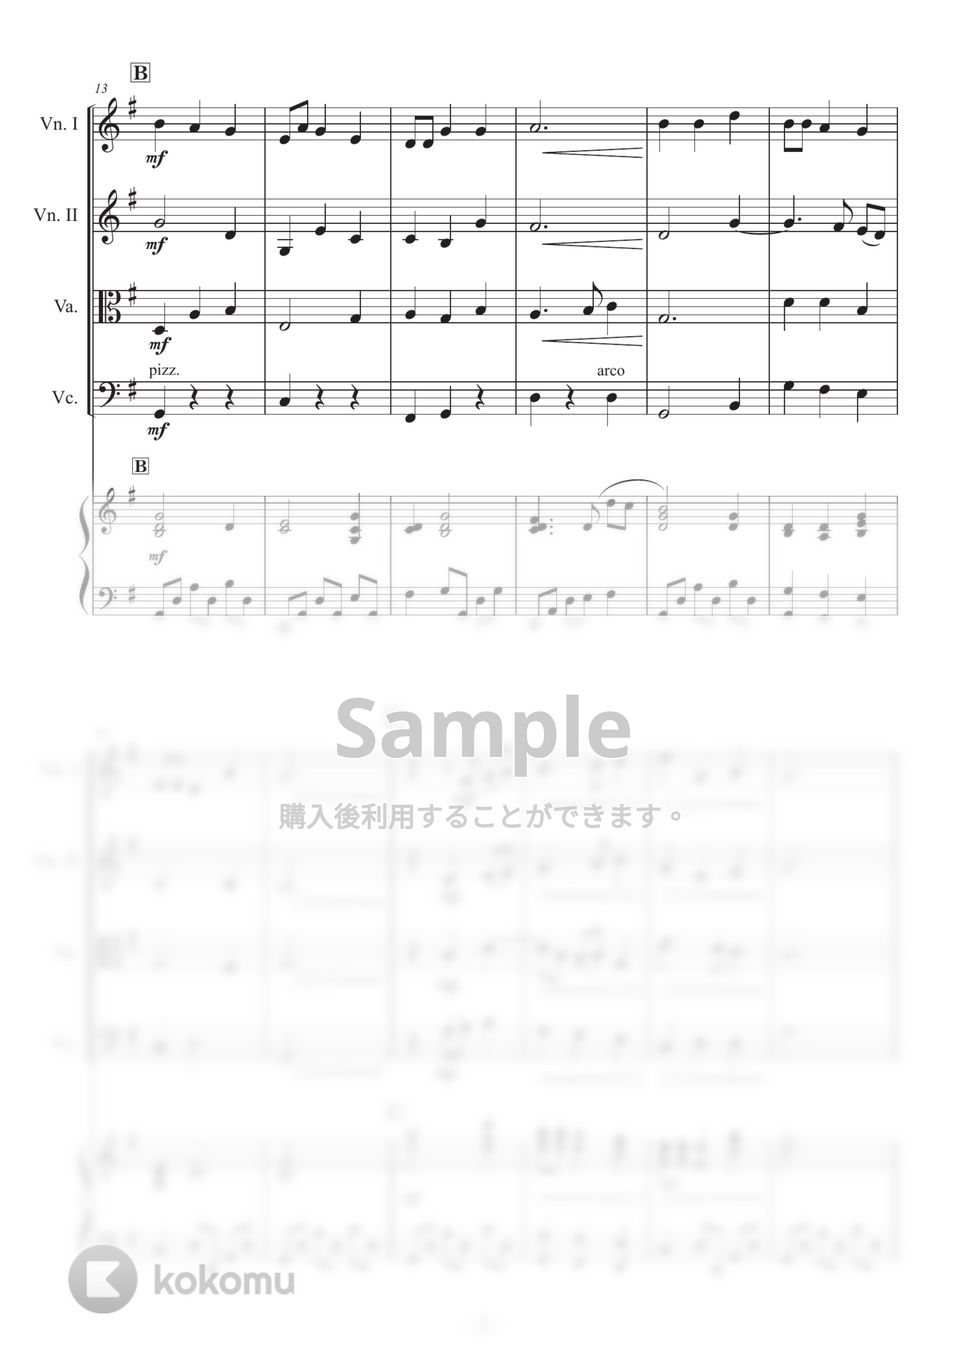 【ピアノ五重奏】うみ (海は広いな〜) by 栗原義継